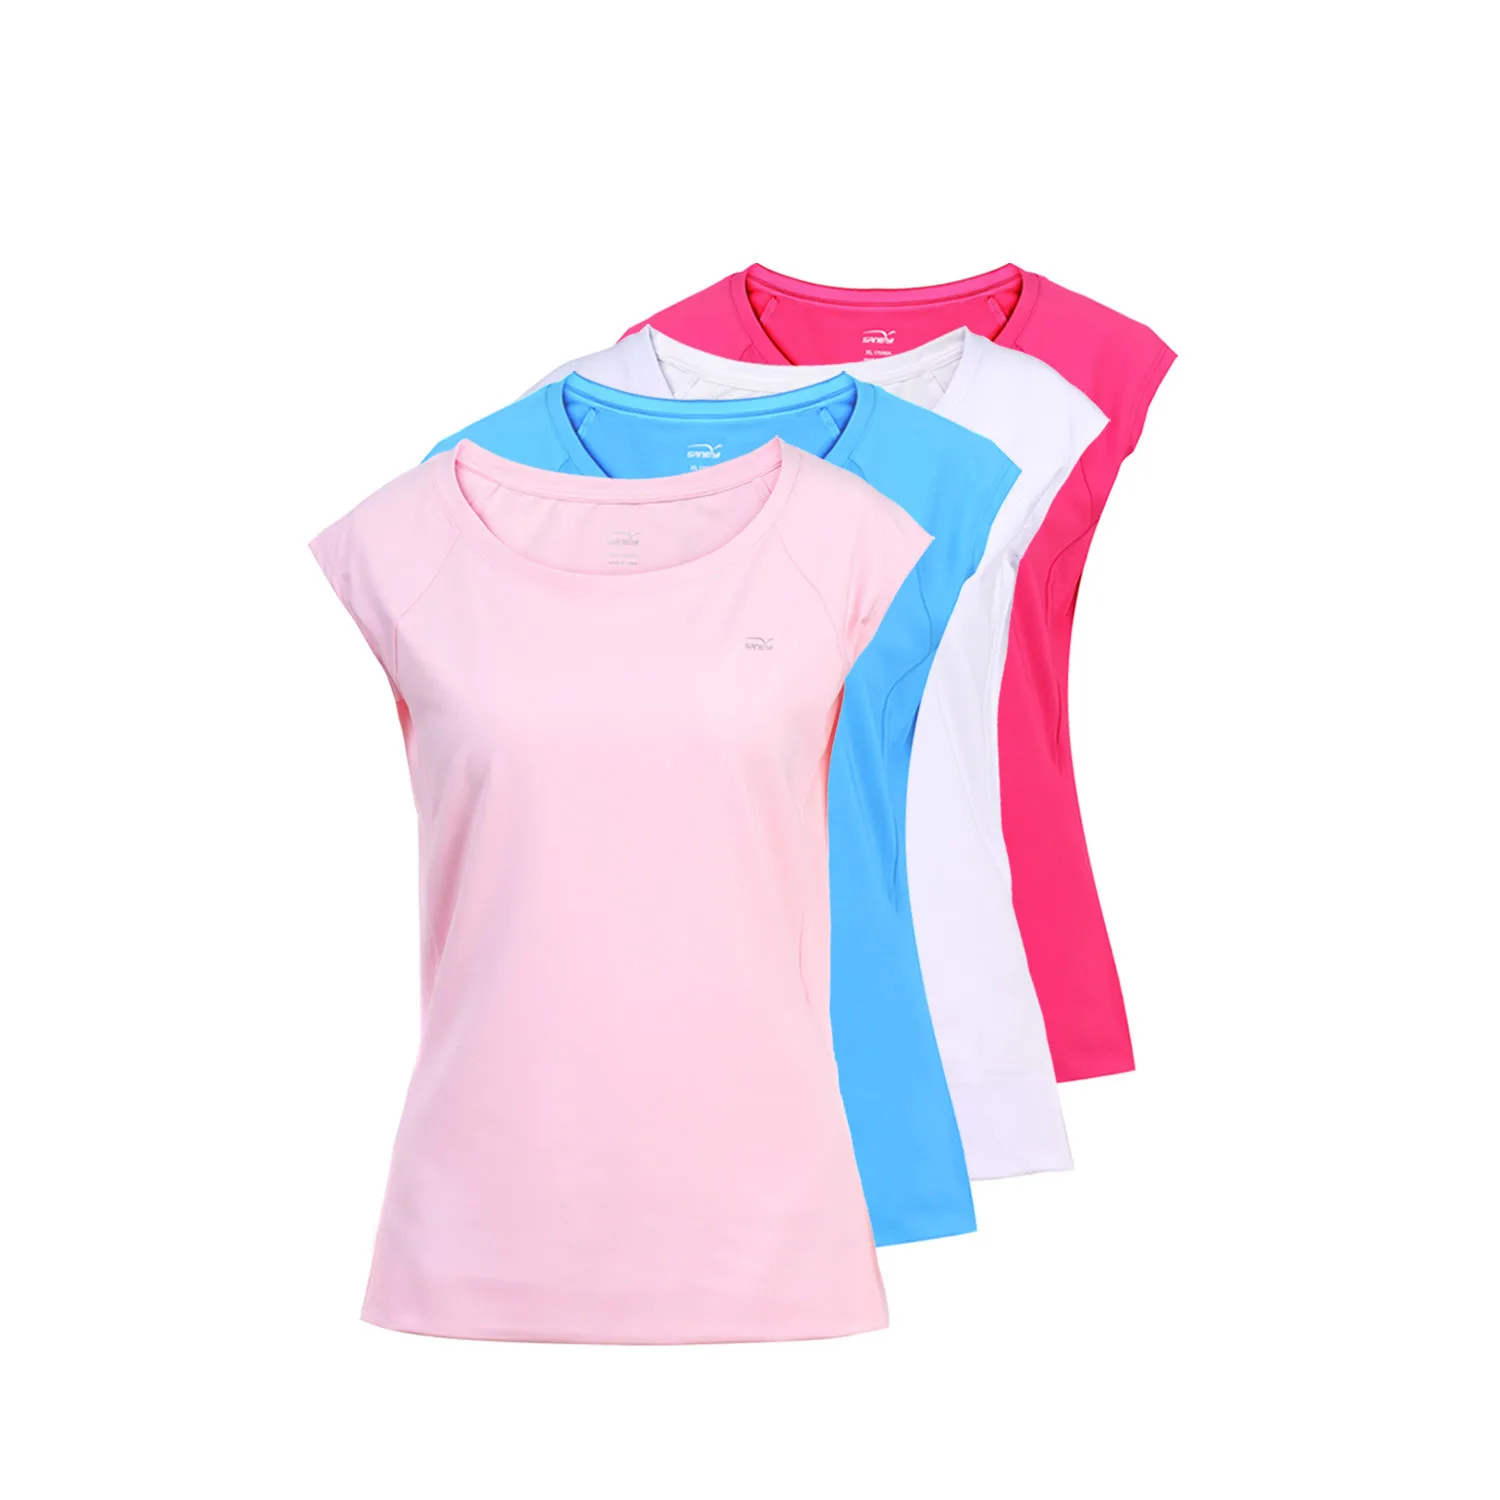 

Summer Women's Sports Tennis T-shirt Golf Tee Yarn Fitness Moisture Wicking Quick Dry Workout Shirts